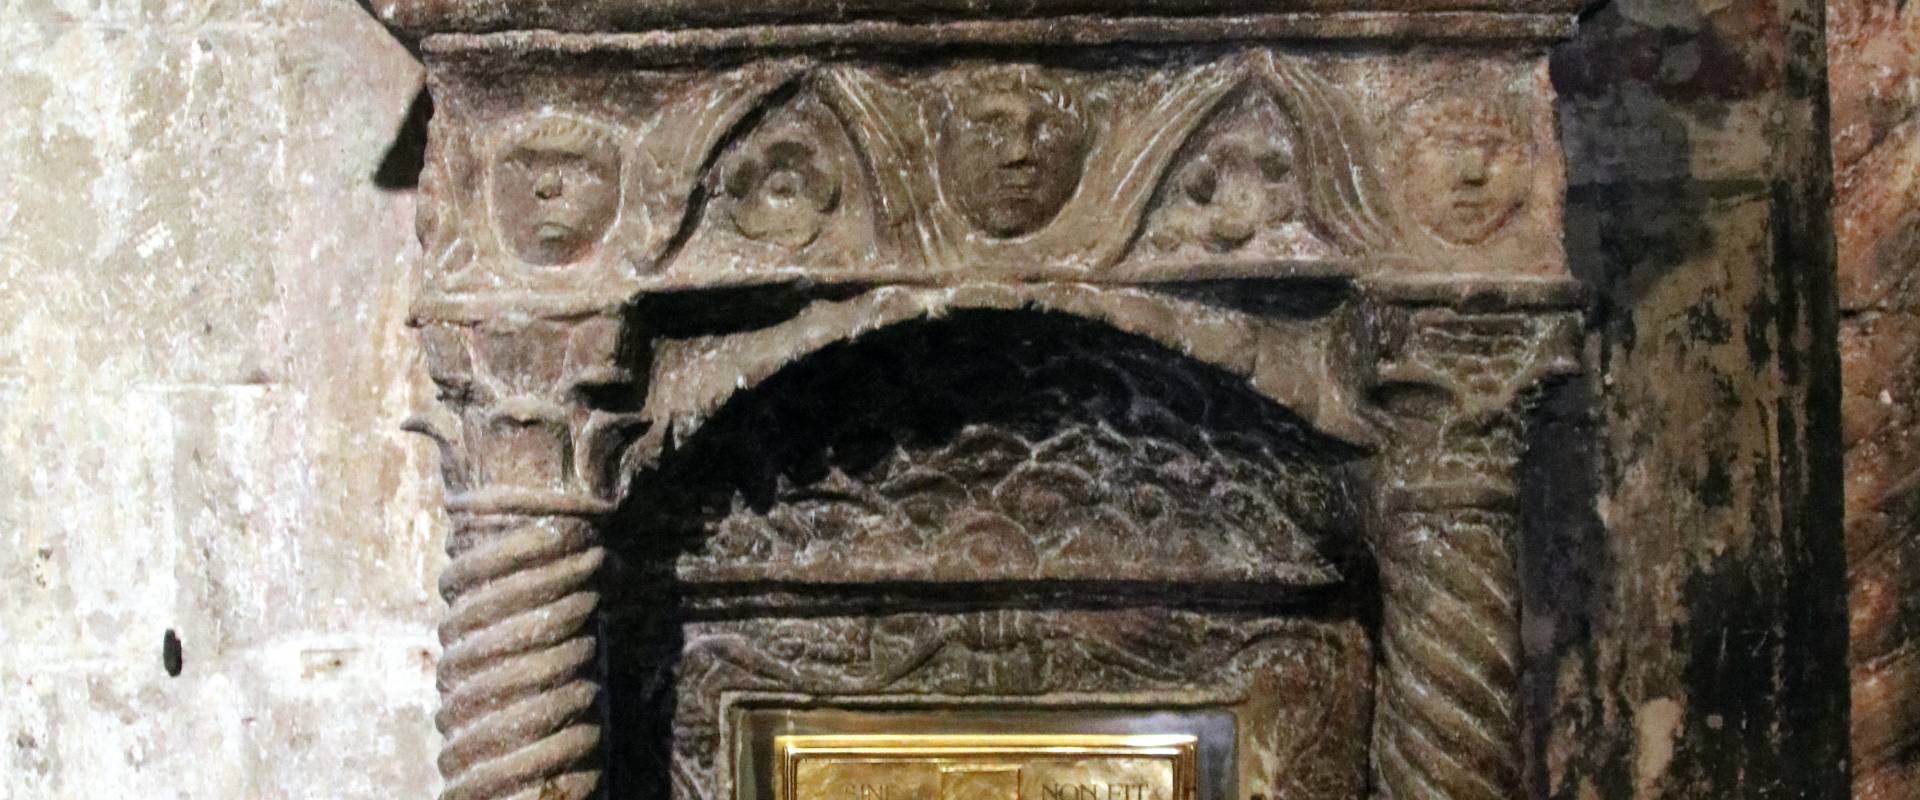 Pieve di San Giorgio (Vigoleno), tabernacolo in pietra scolpita 02 photo by Mongolo1984